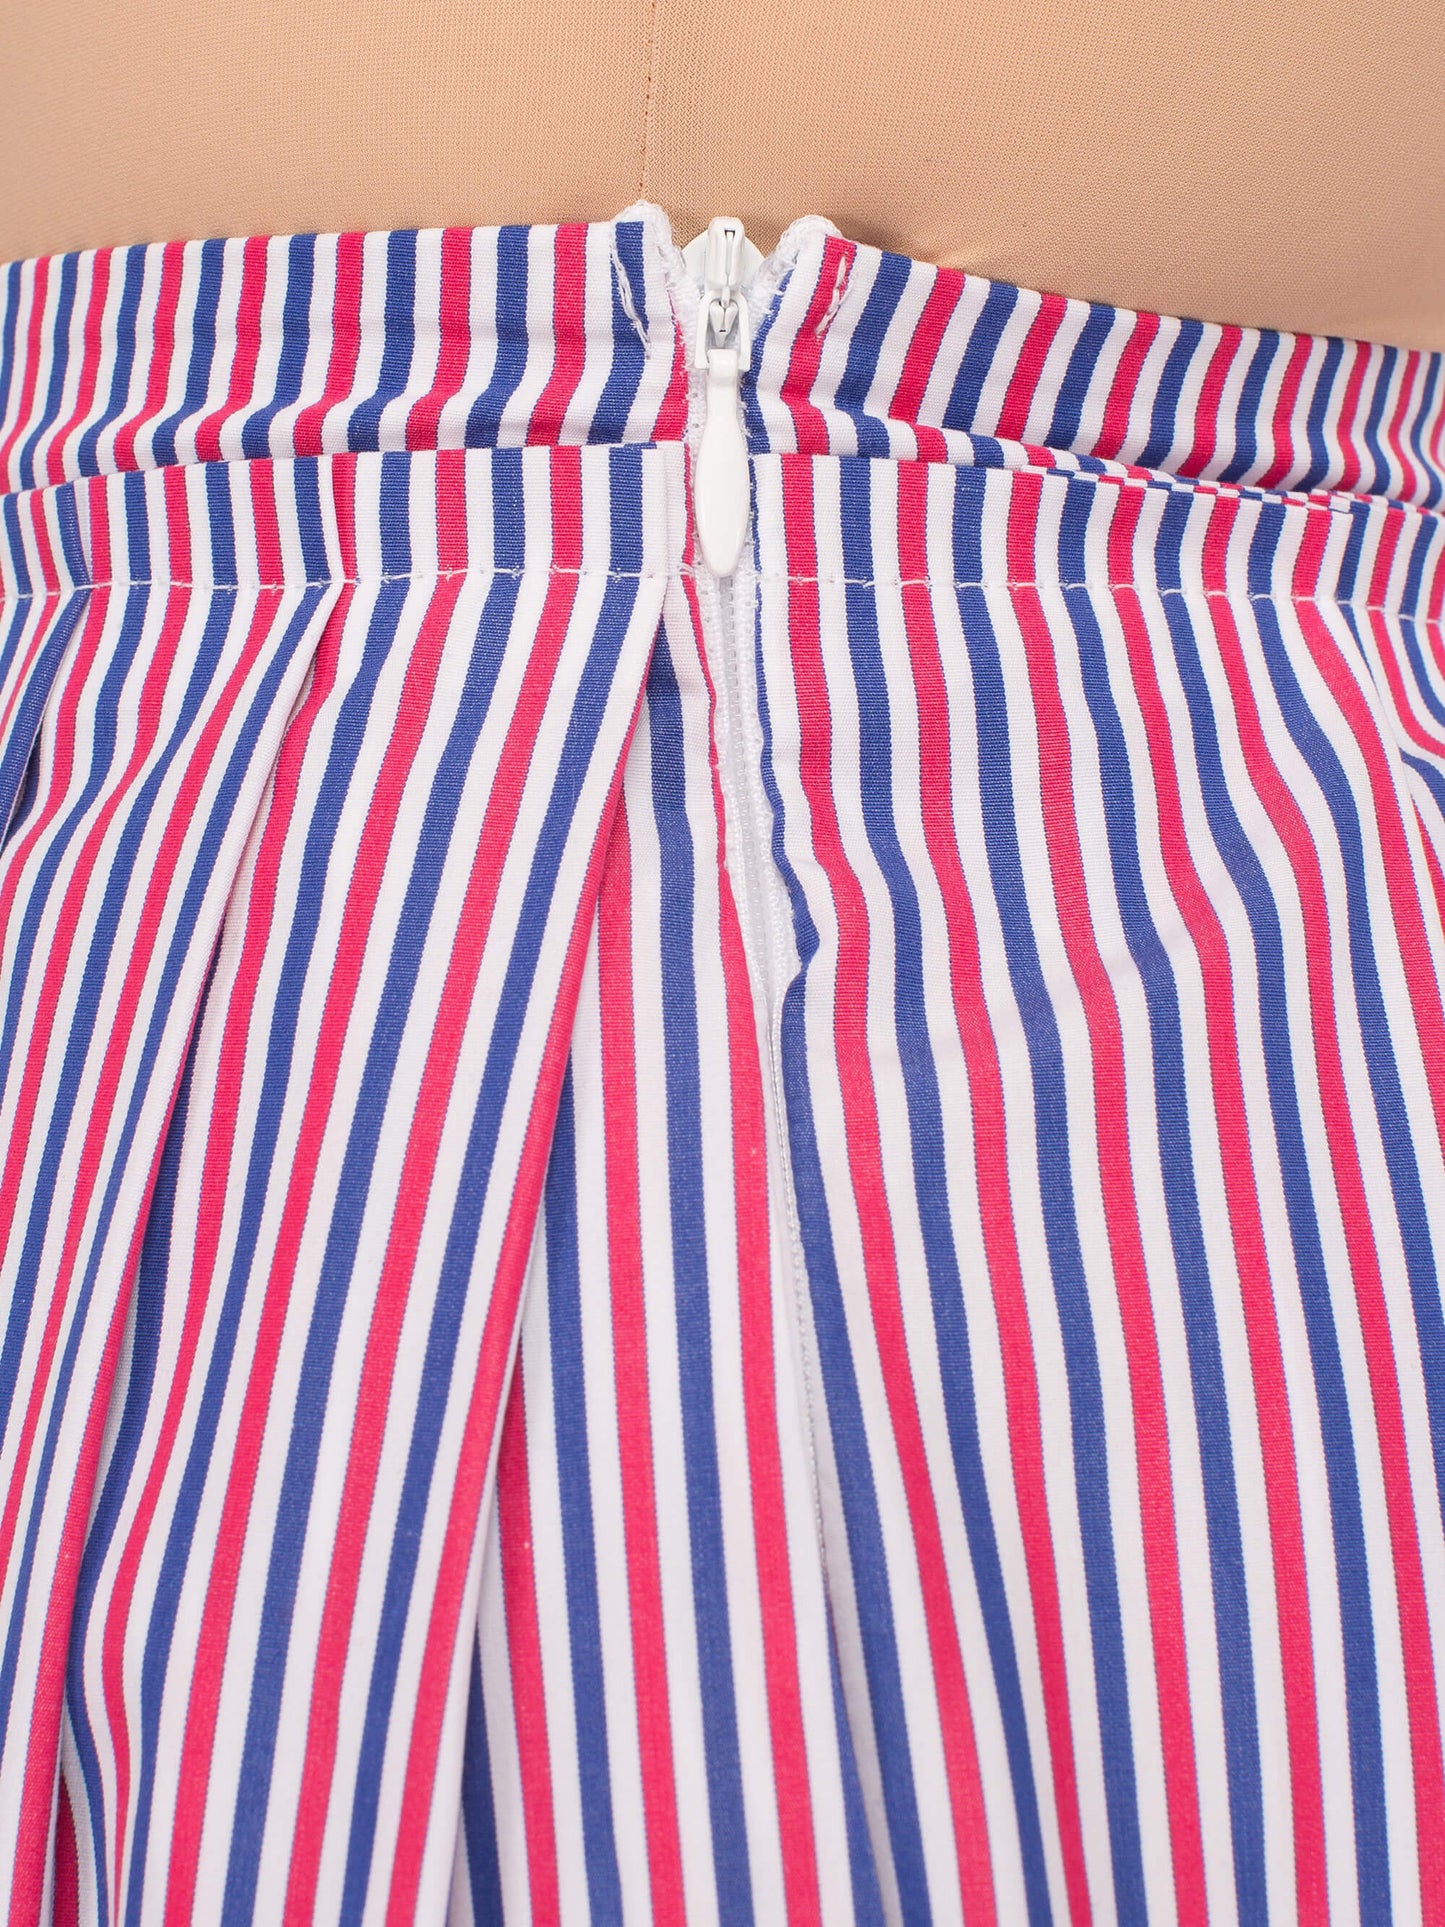 Double Stripe Skirt